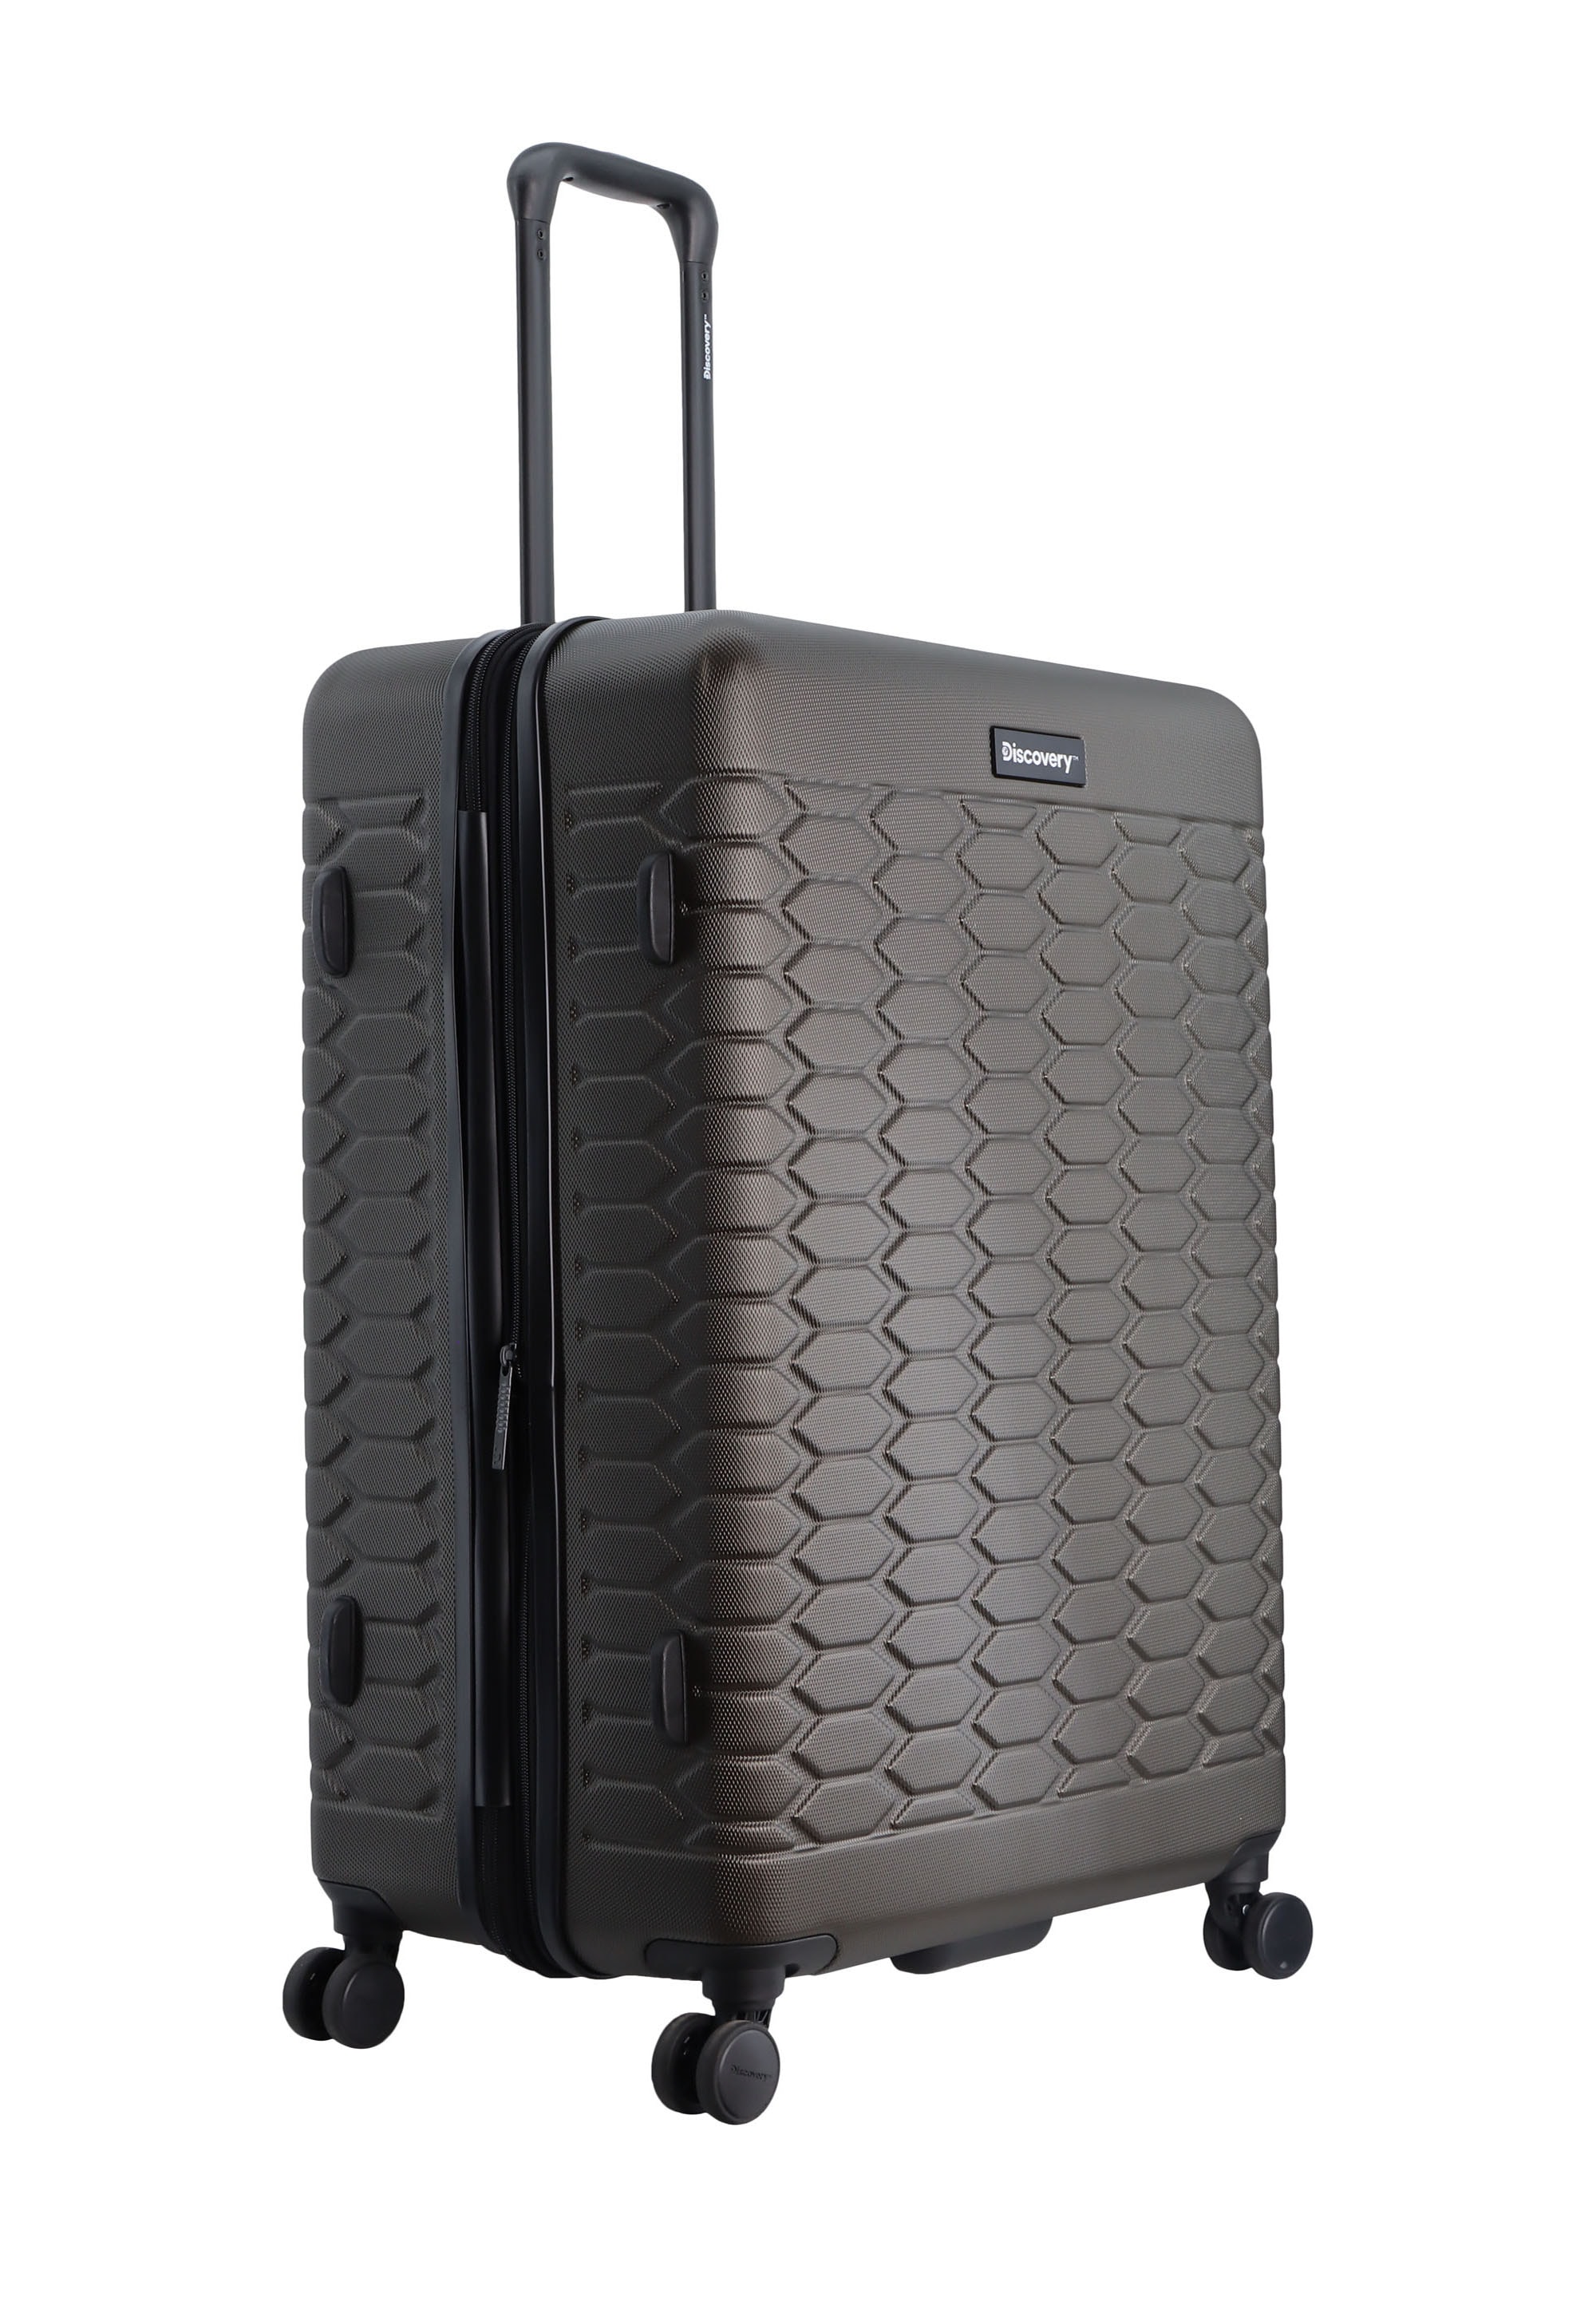 Discovery Koffer »REPTILE«, mit integriertem TSA-Schloss